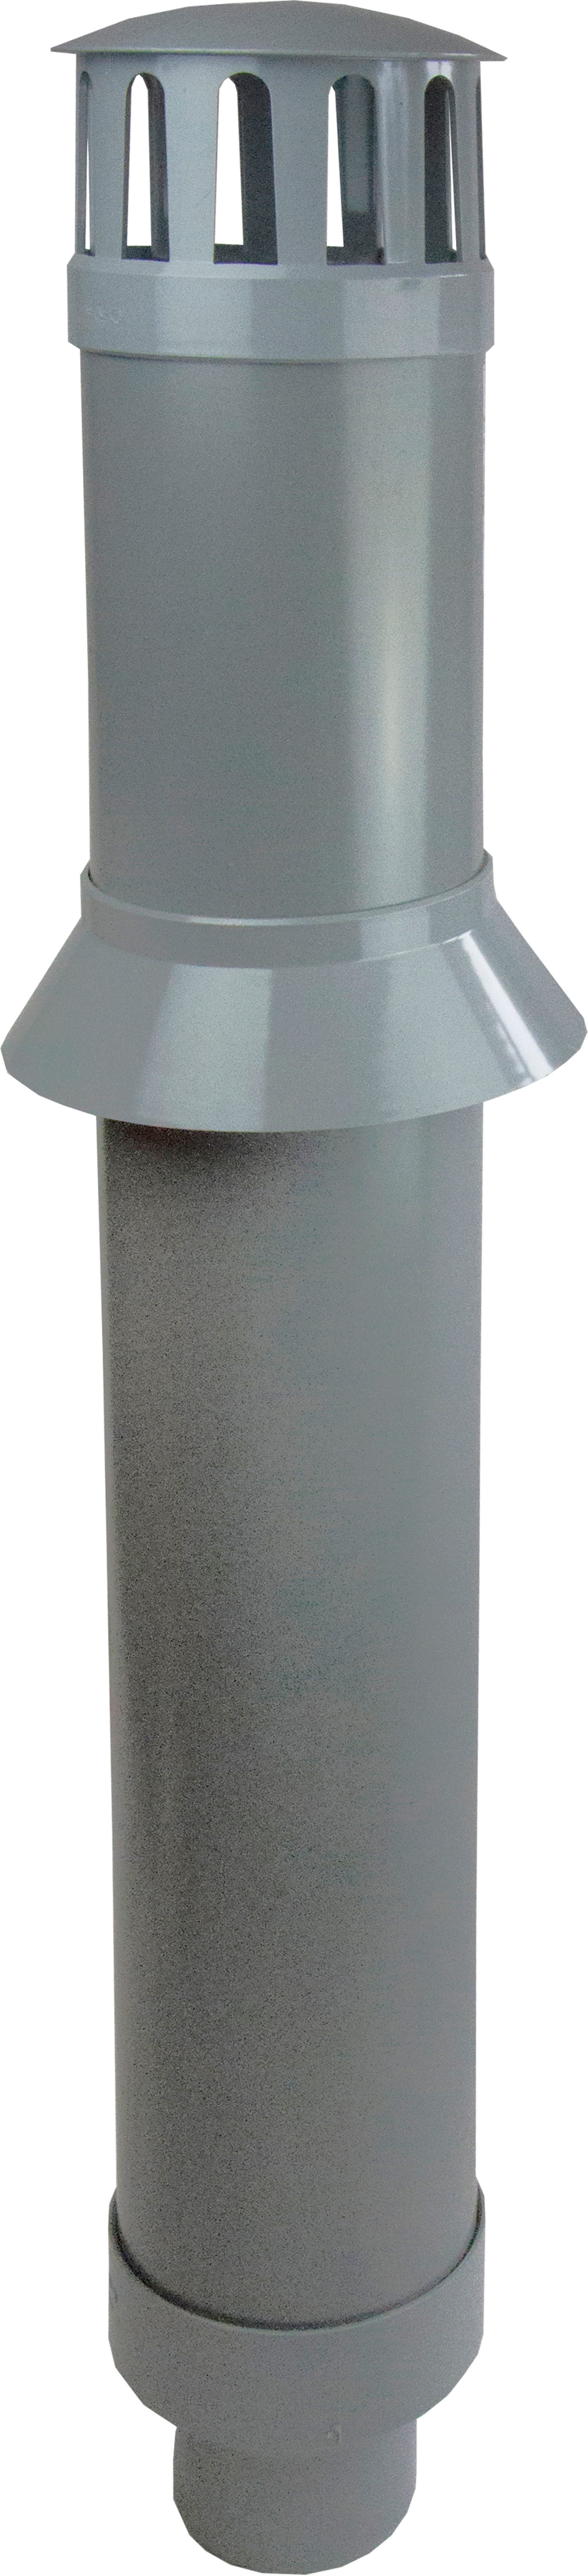 Ventilationsskorsten för inomhusavlopp Kaczmarek PVC-U 160 / 110 mm